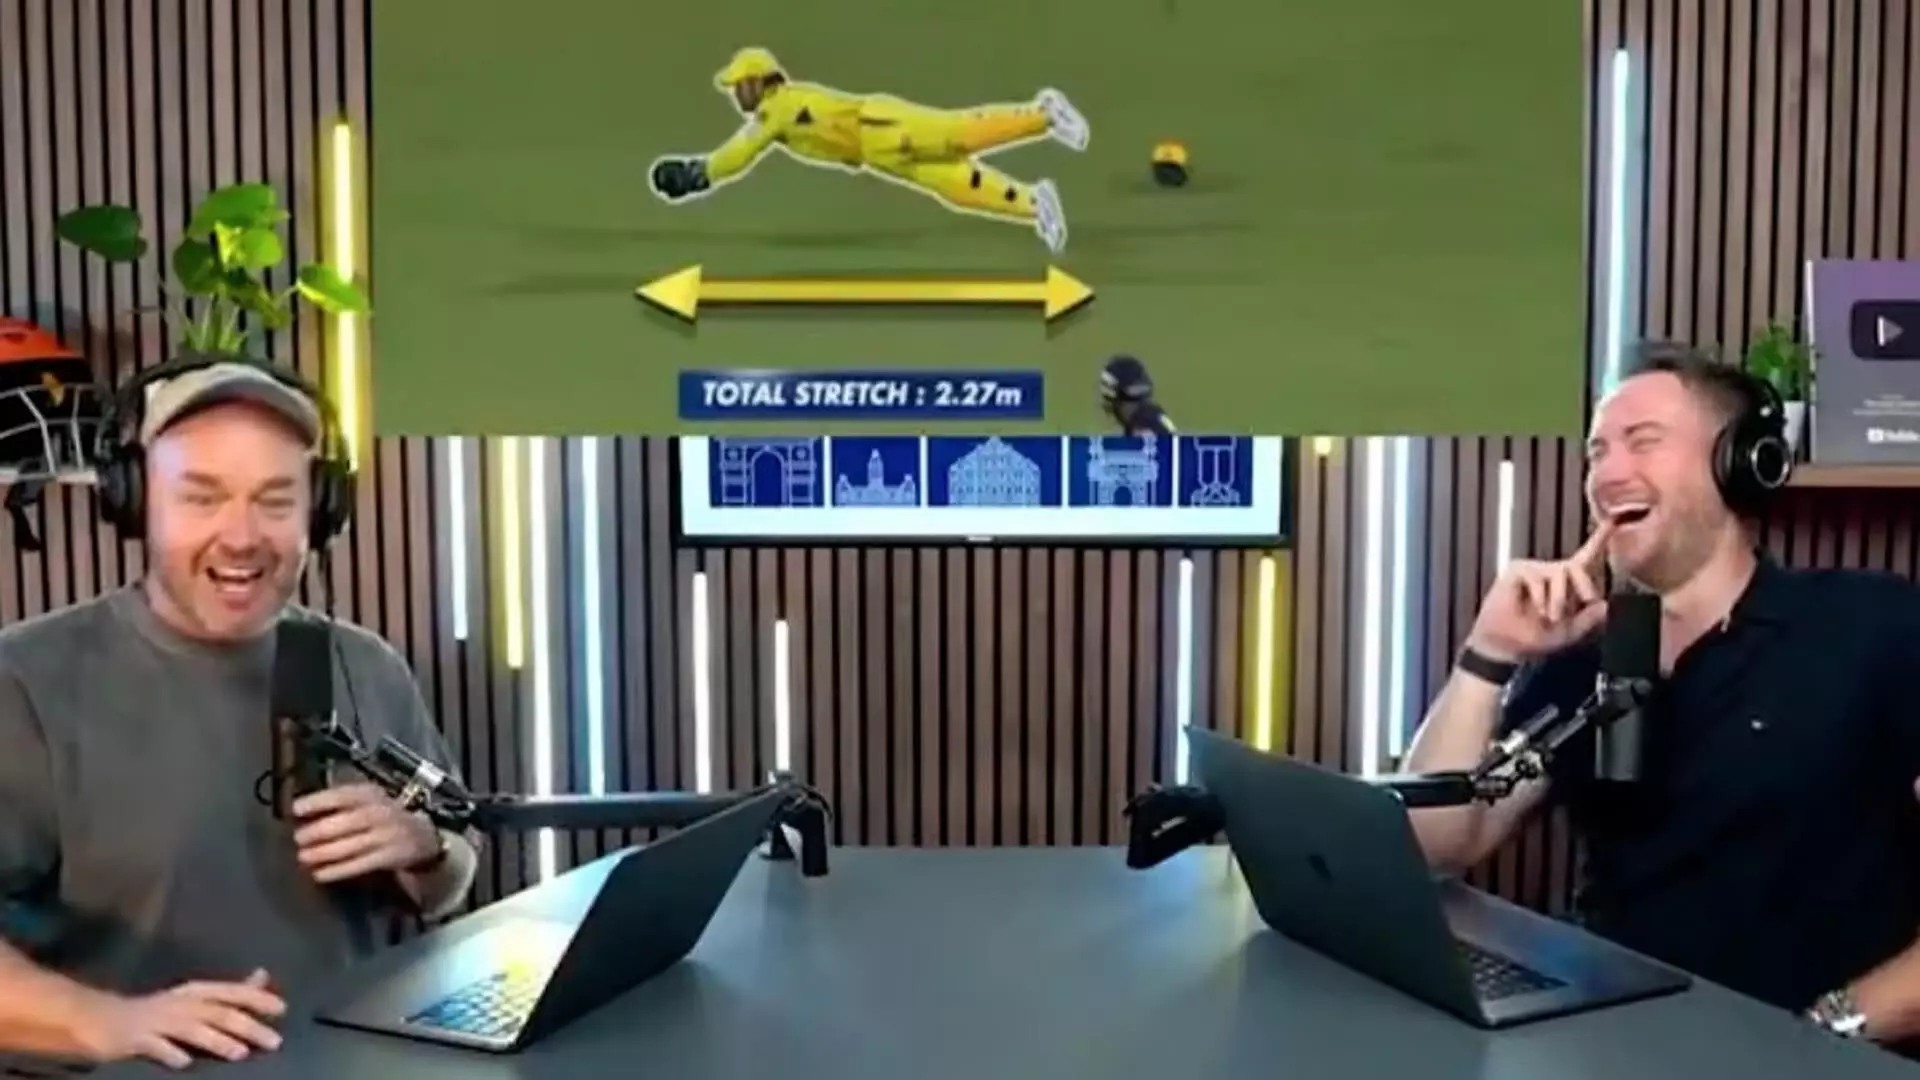 धोनी के वायरल कैच पर भारतीयों की प्रतिक्रिया का ऑस्ट्रेलियाई पॉडकास्टरों ने उड़ाया मजाक